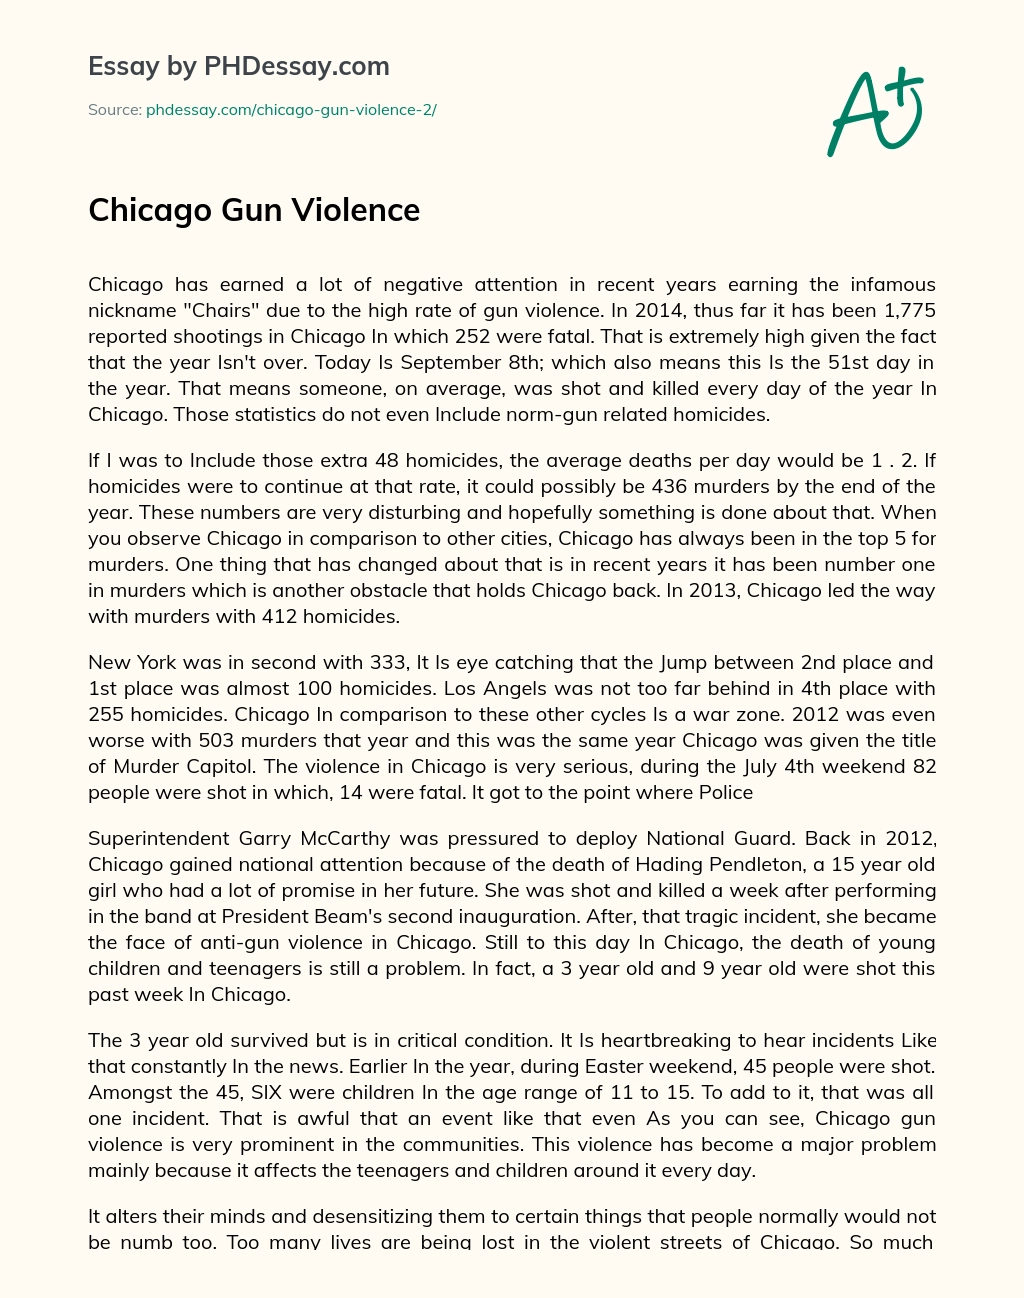 Chicago Gun Violence essay